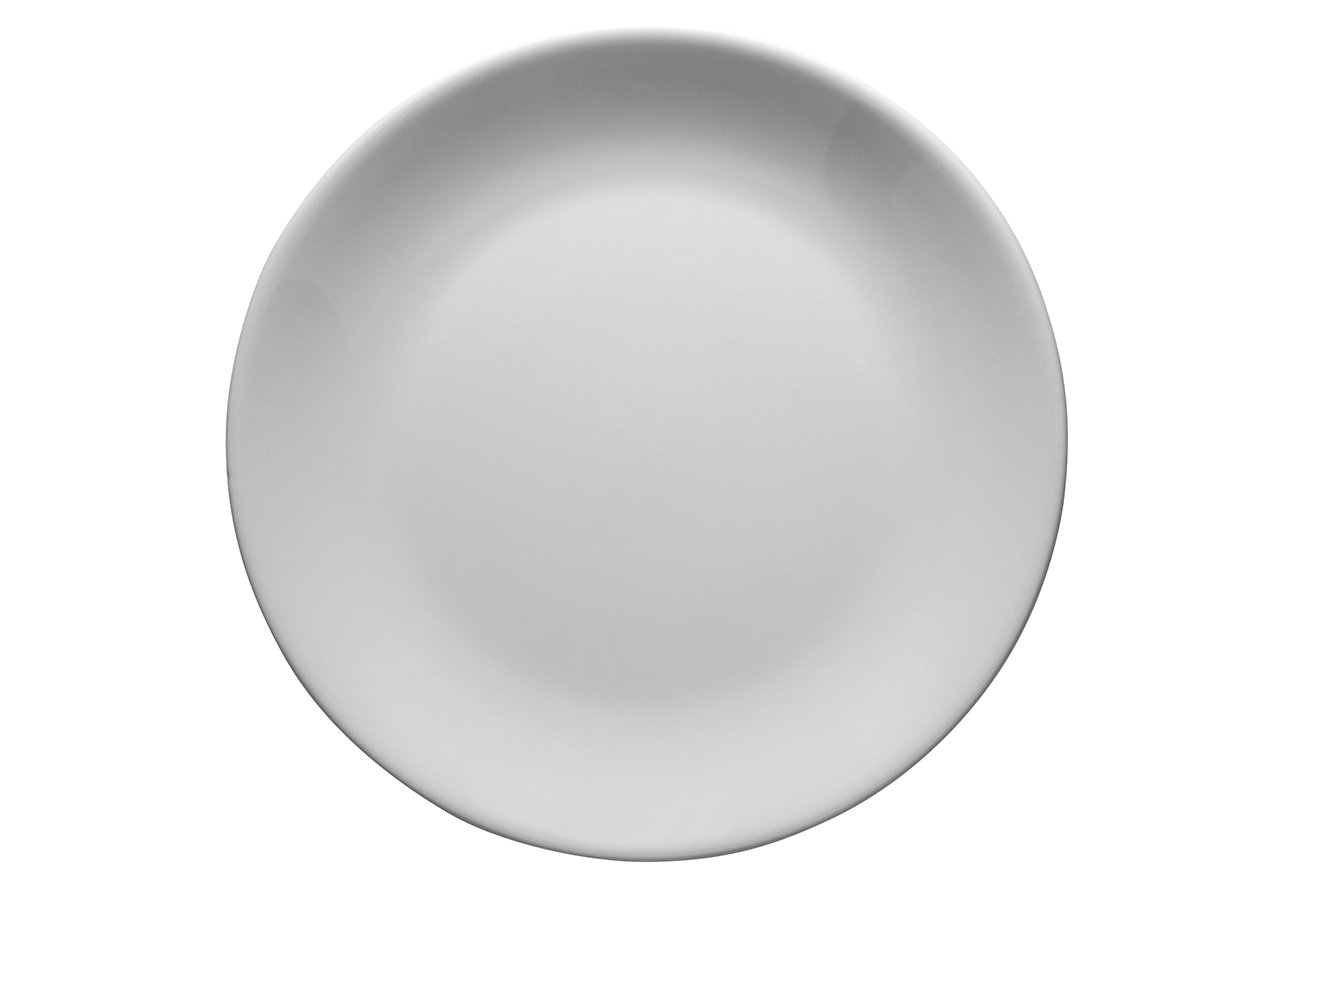 Flat plate. Десерт на тарелке. Kutahya Porselen суповые тарелки. Тарелки суповые диаметром 25 см. фарфоровые. Steelite посуда тарелка.